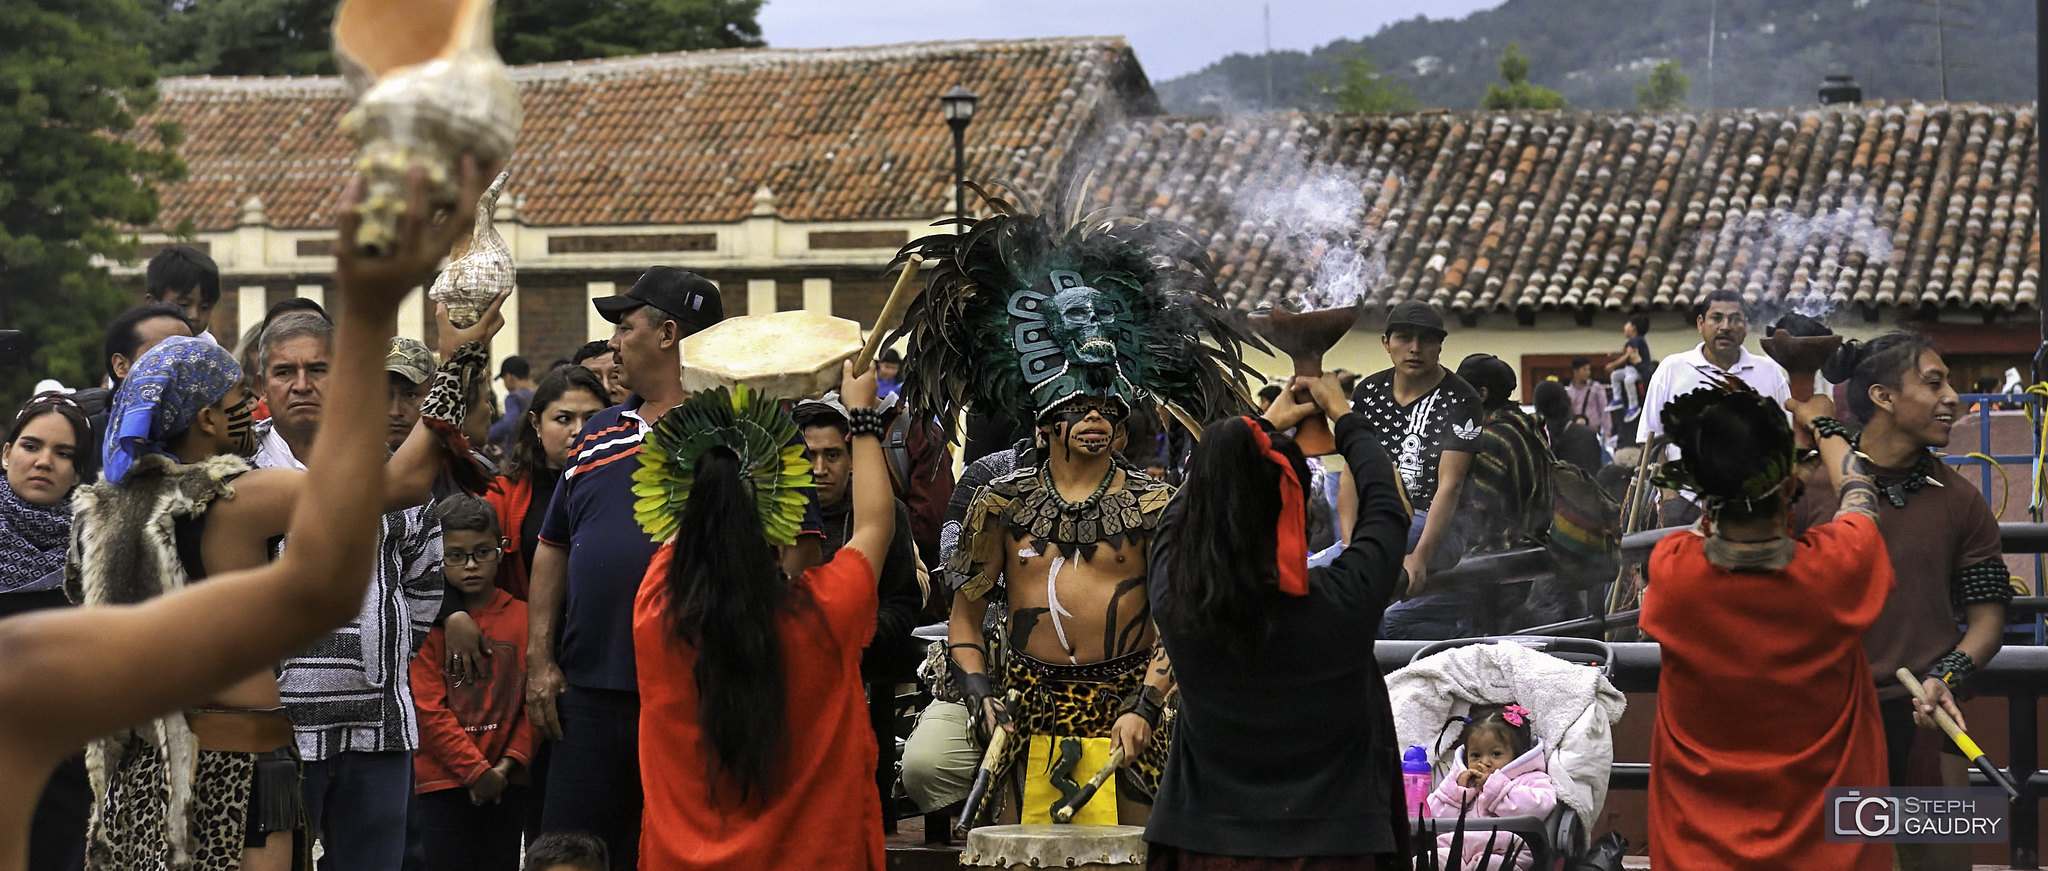 Danses rituelles à San Cristóbal de las Casas [Click to start slideshow]